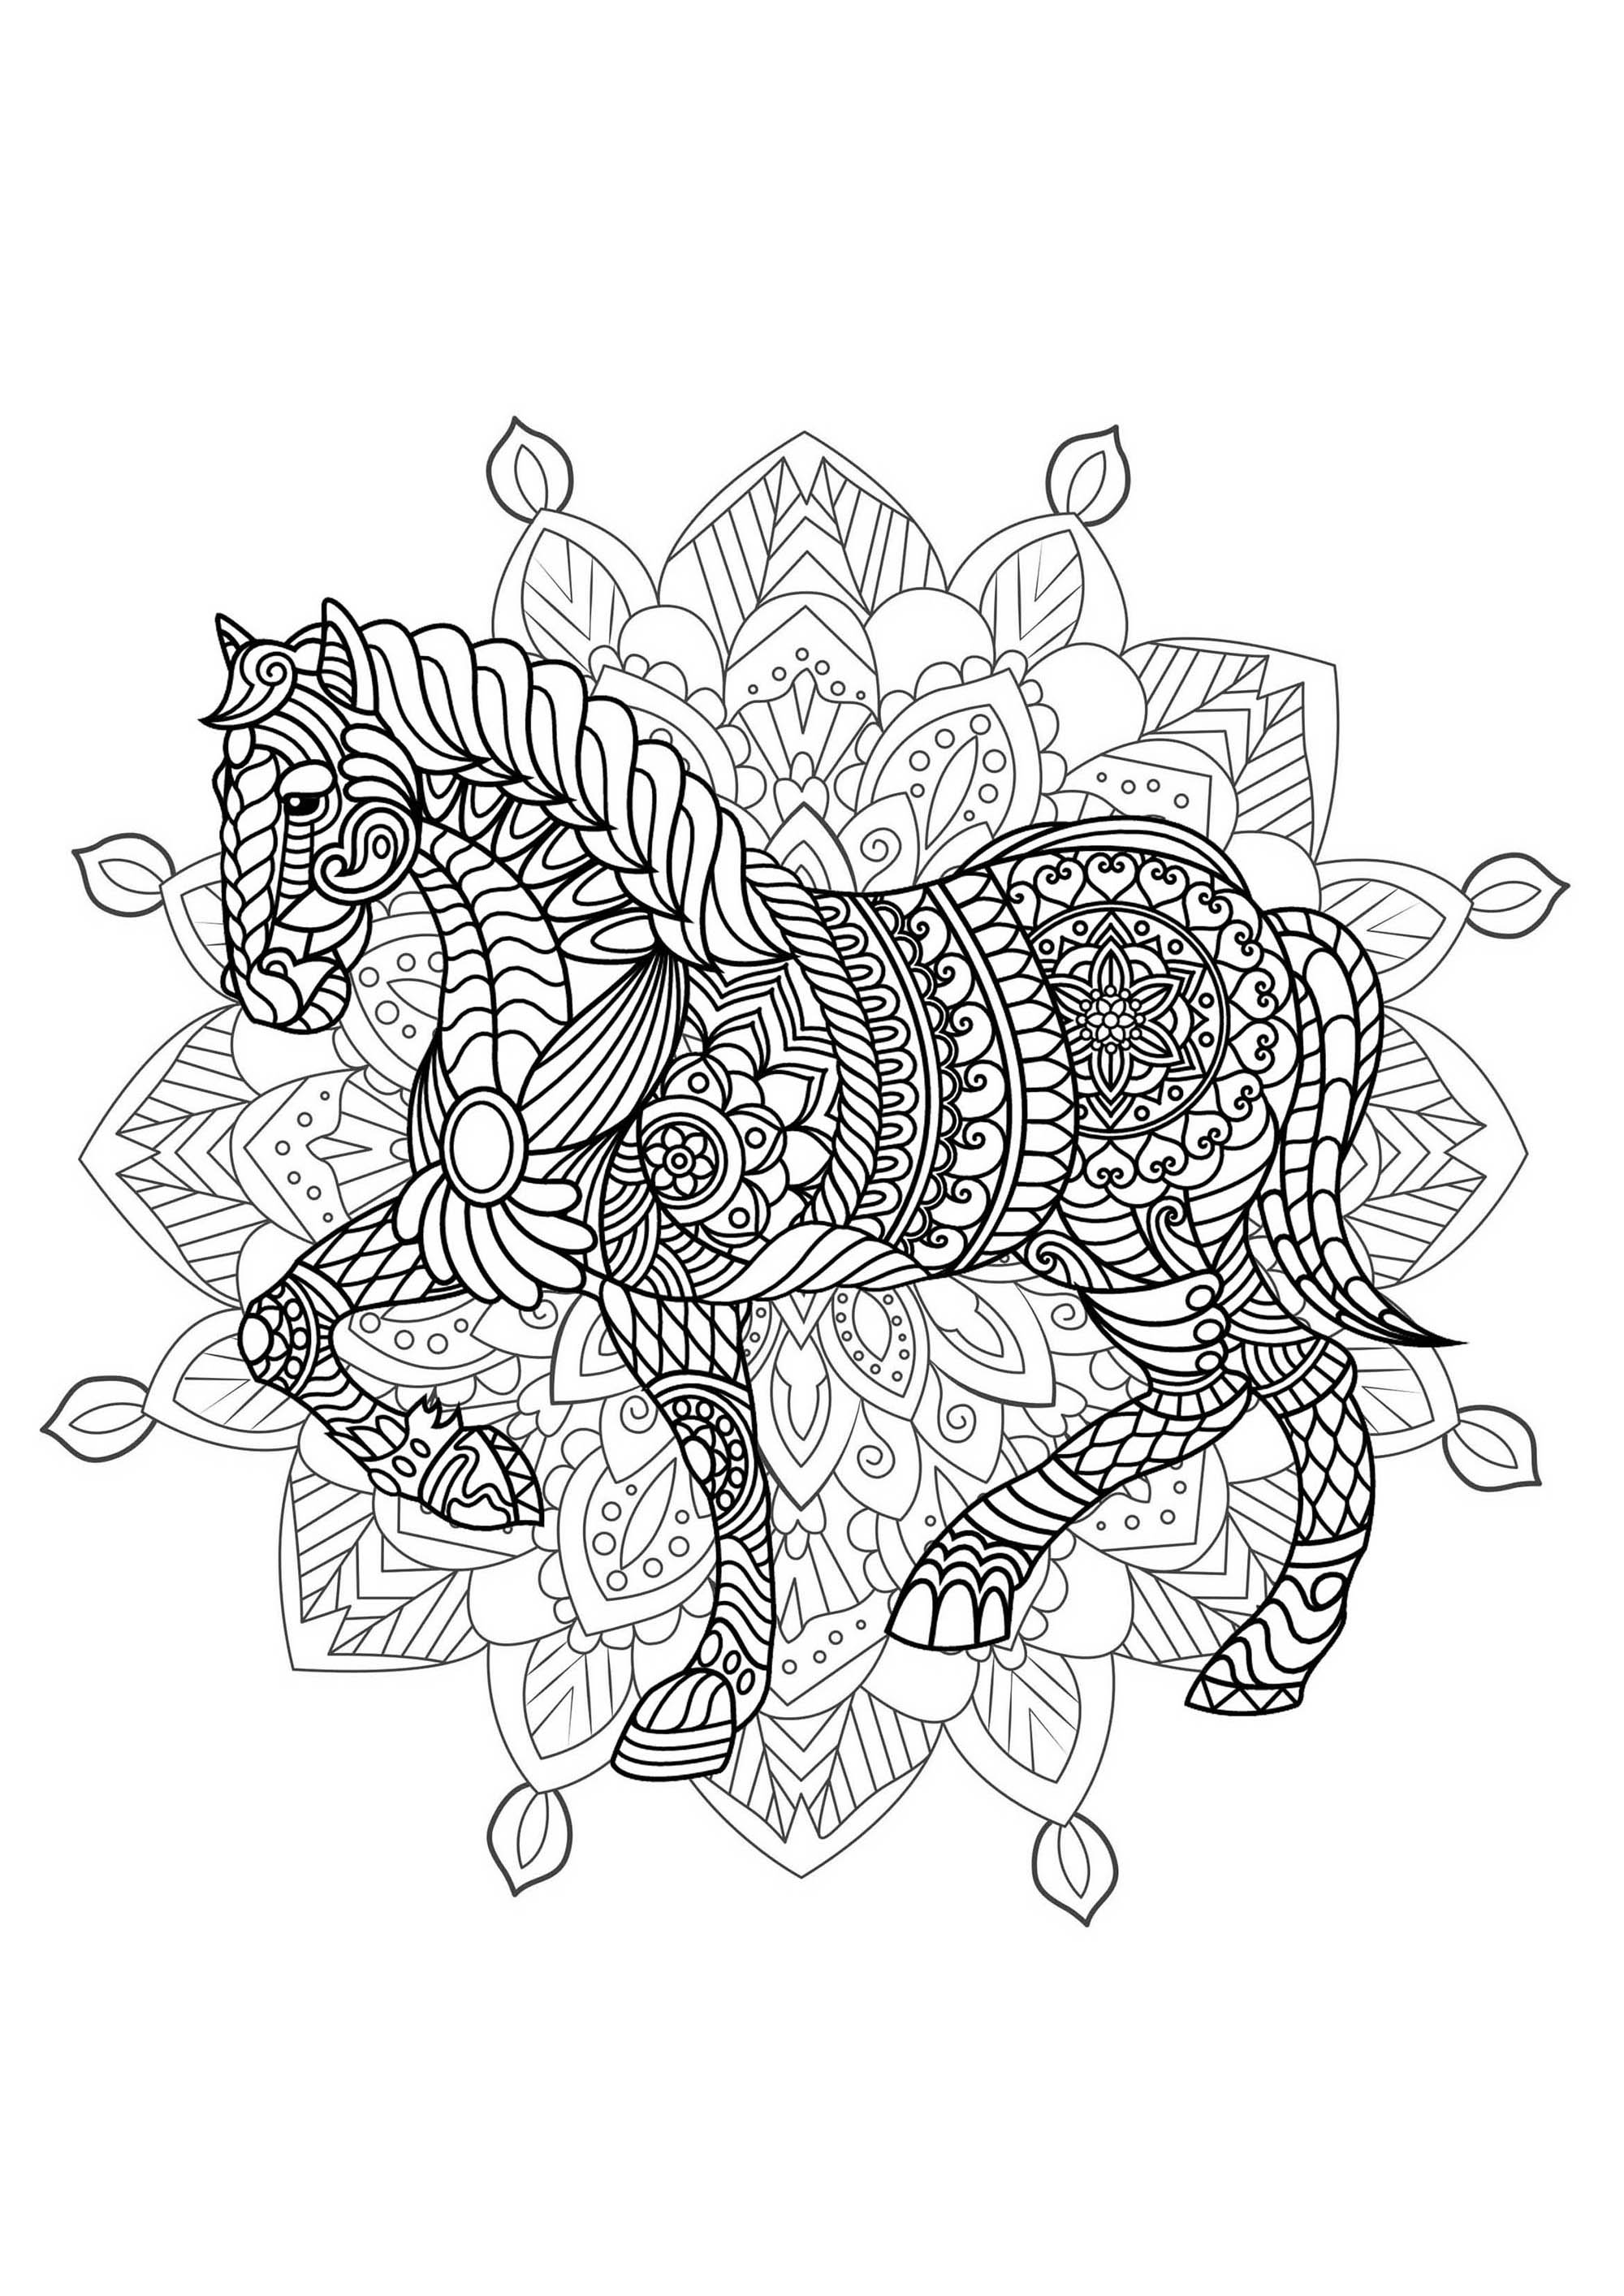 Pferd & Mandala - Bereiten Sie Ihre Filzstifte und Bleistifte vor, um dieses Mandala voller kleiner Details und ineinandergreifender Bereiche farbig zu gestalten.